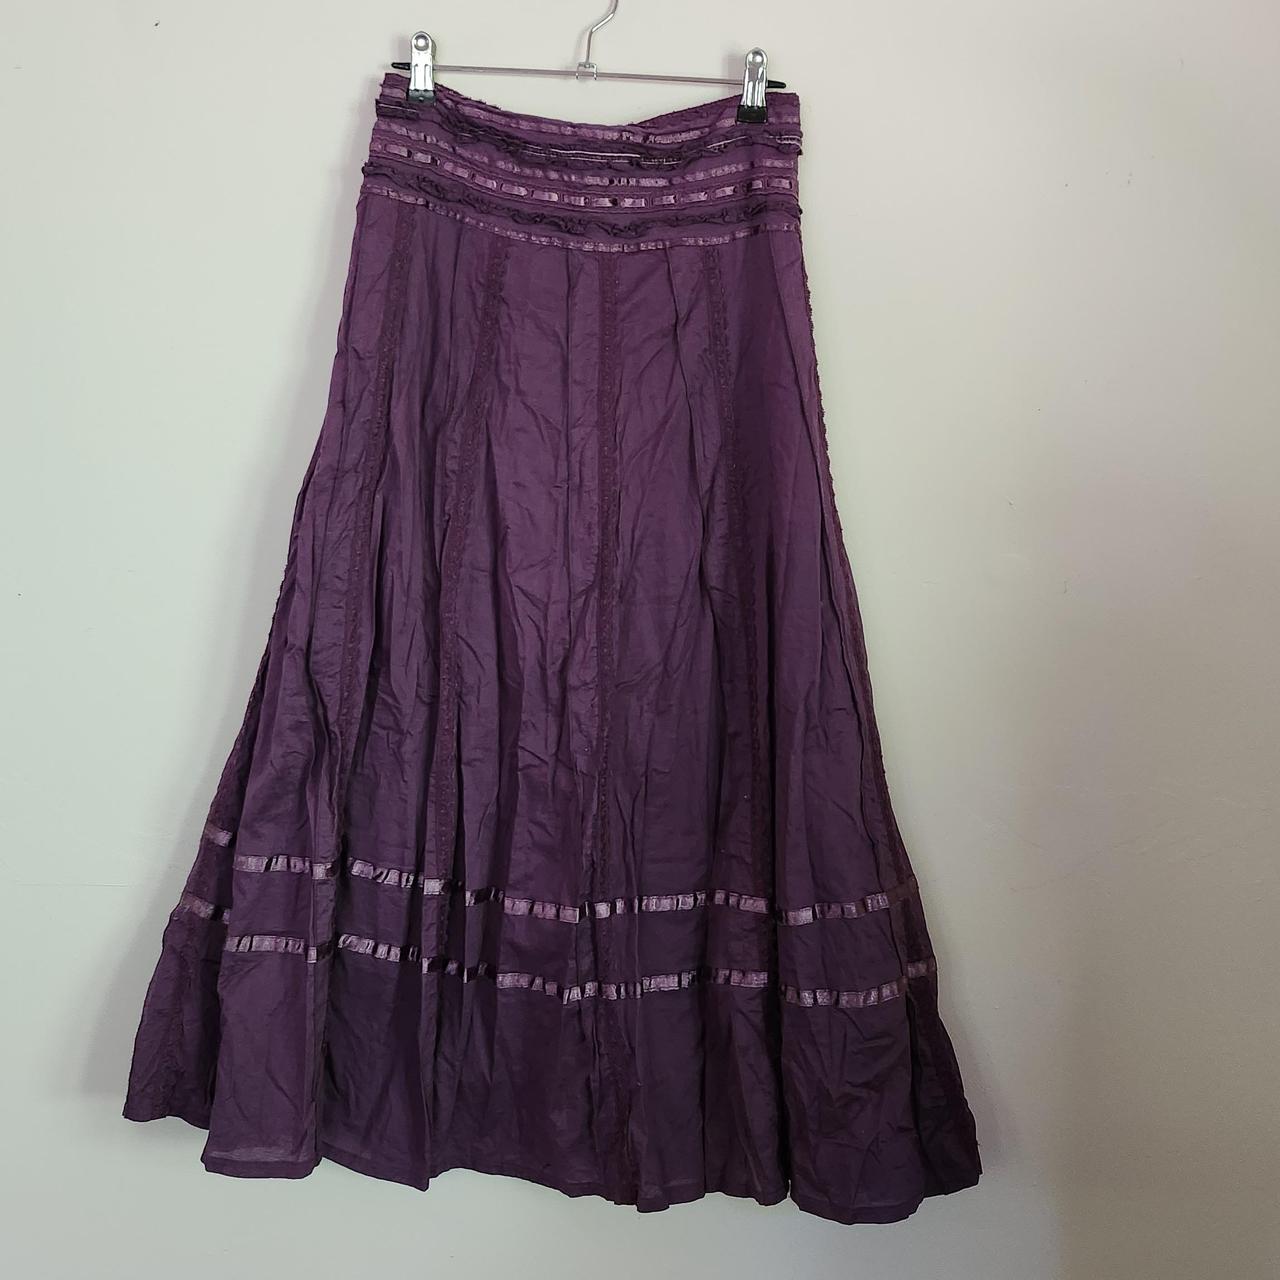 Cute fairy cottagecore purple maxi lace skirt. Size... - Depop